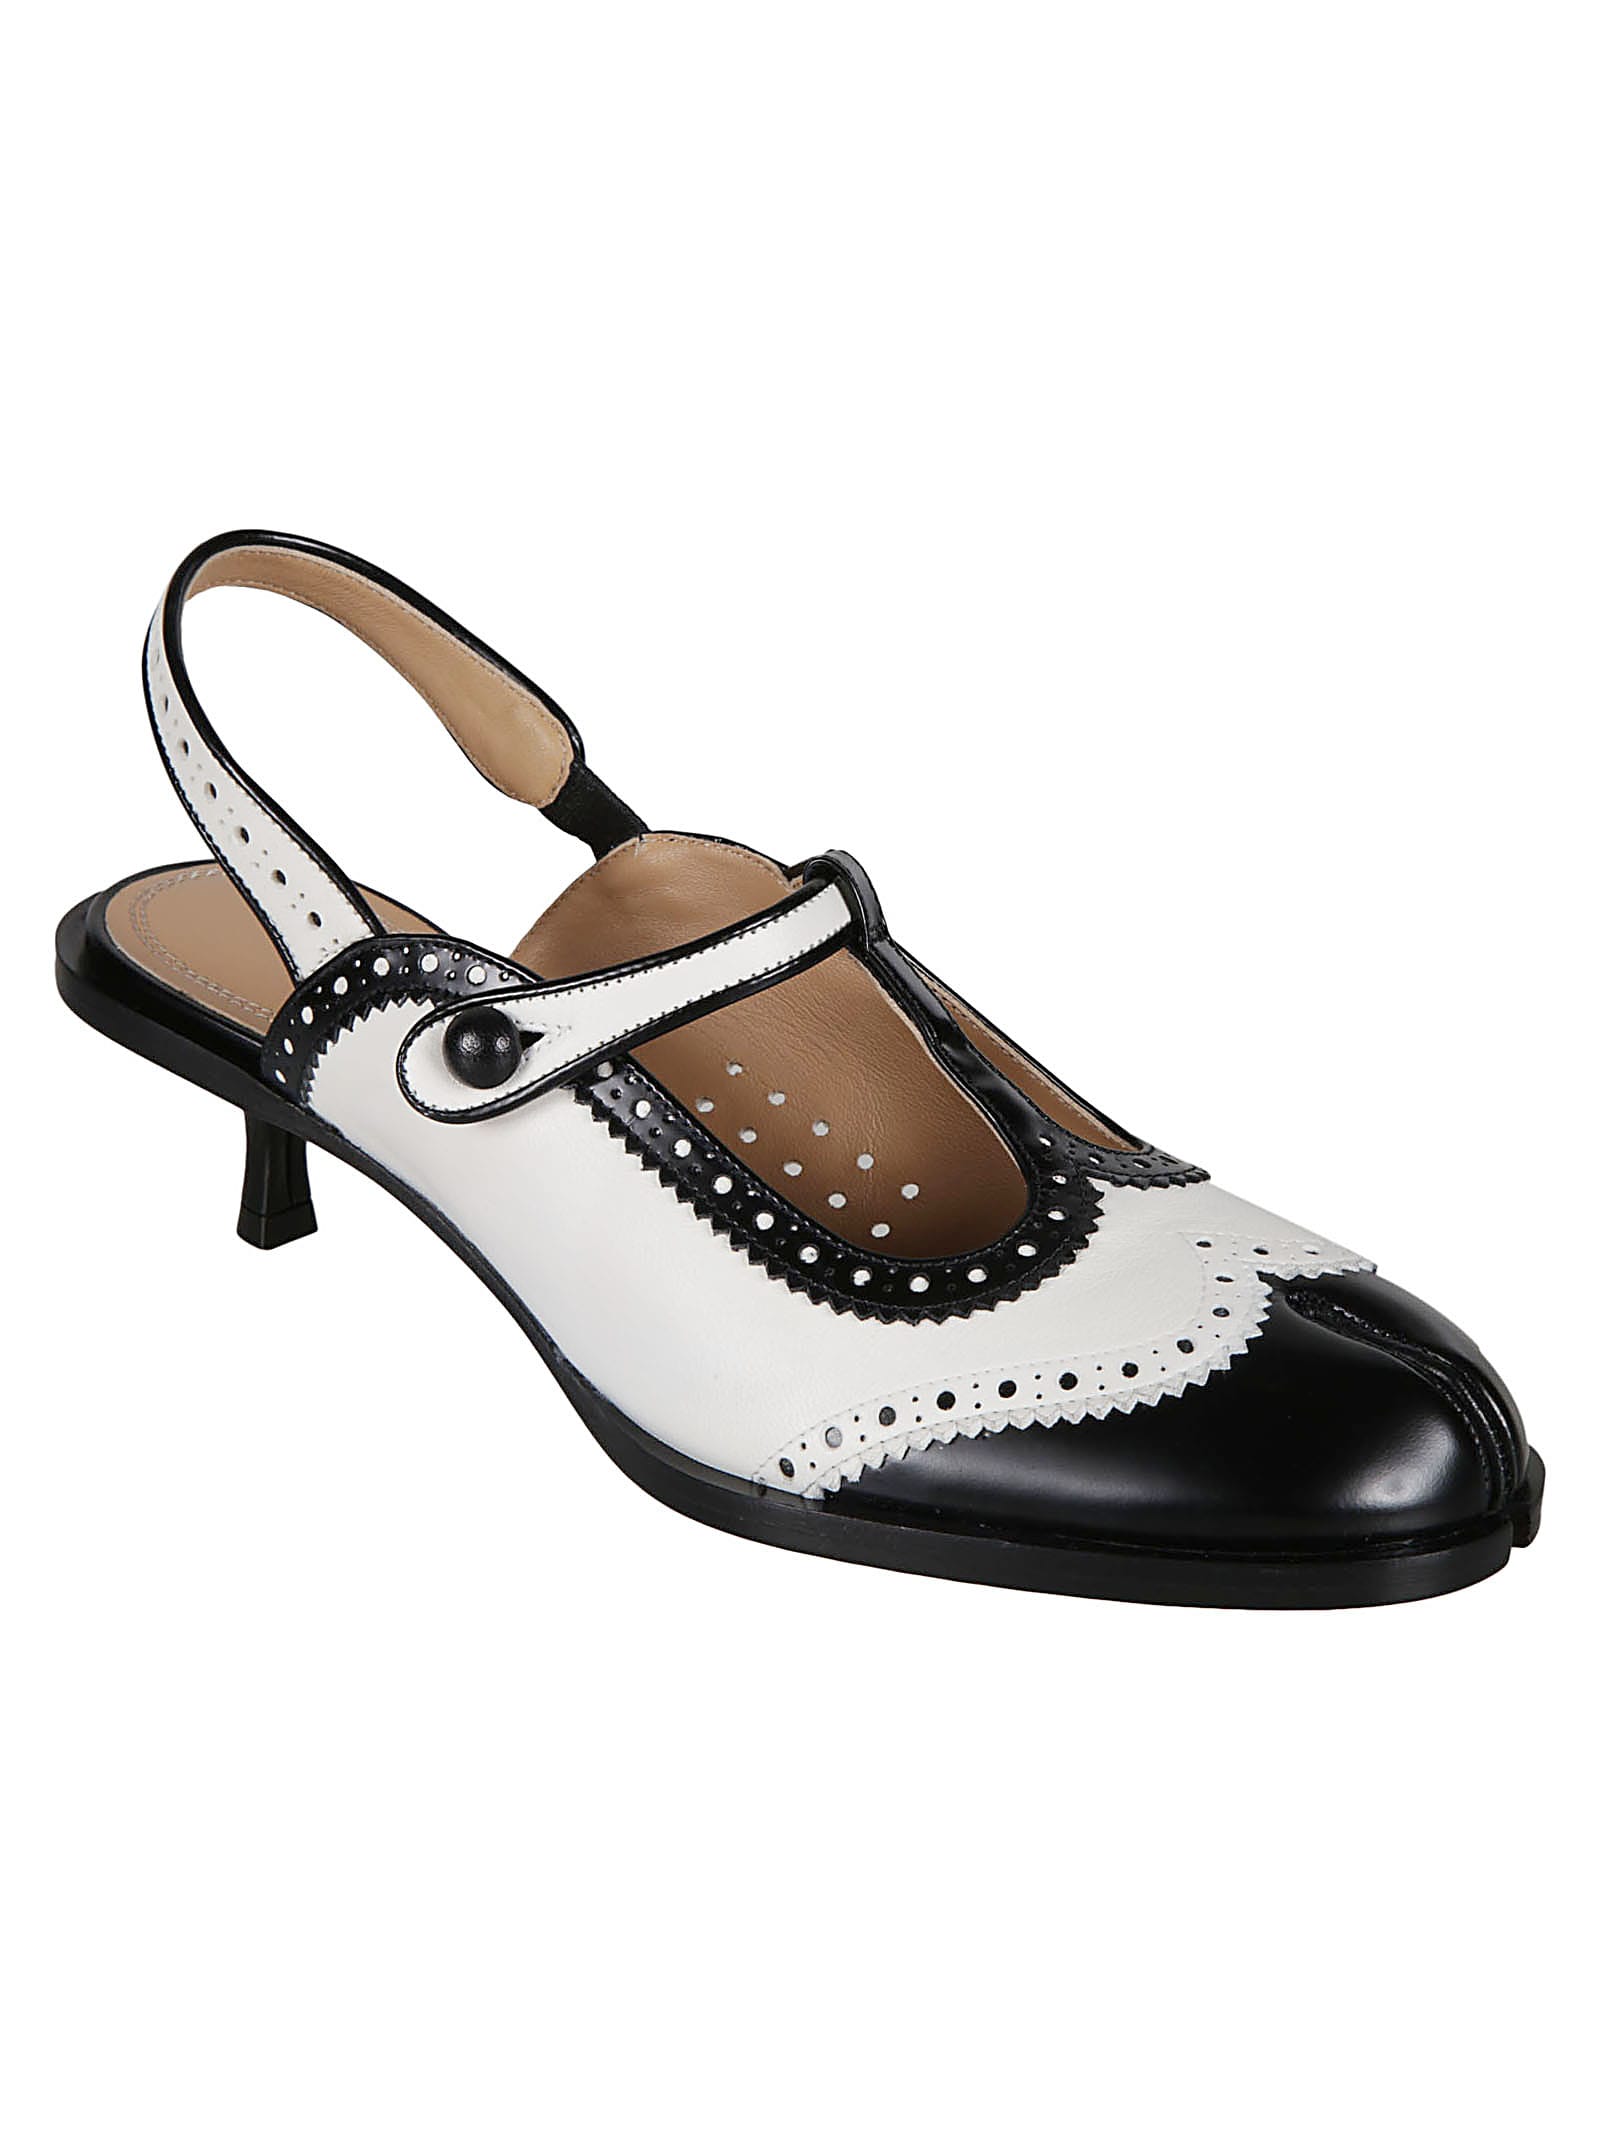 Shop Maison Margiela Bacl Strap Cleft Toe Sandals In Black/white